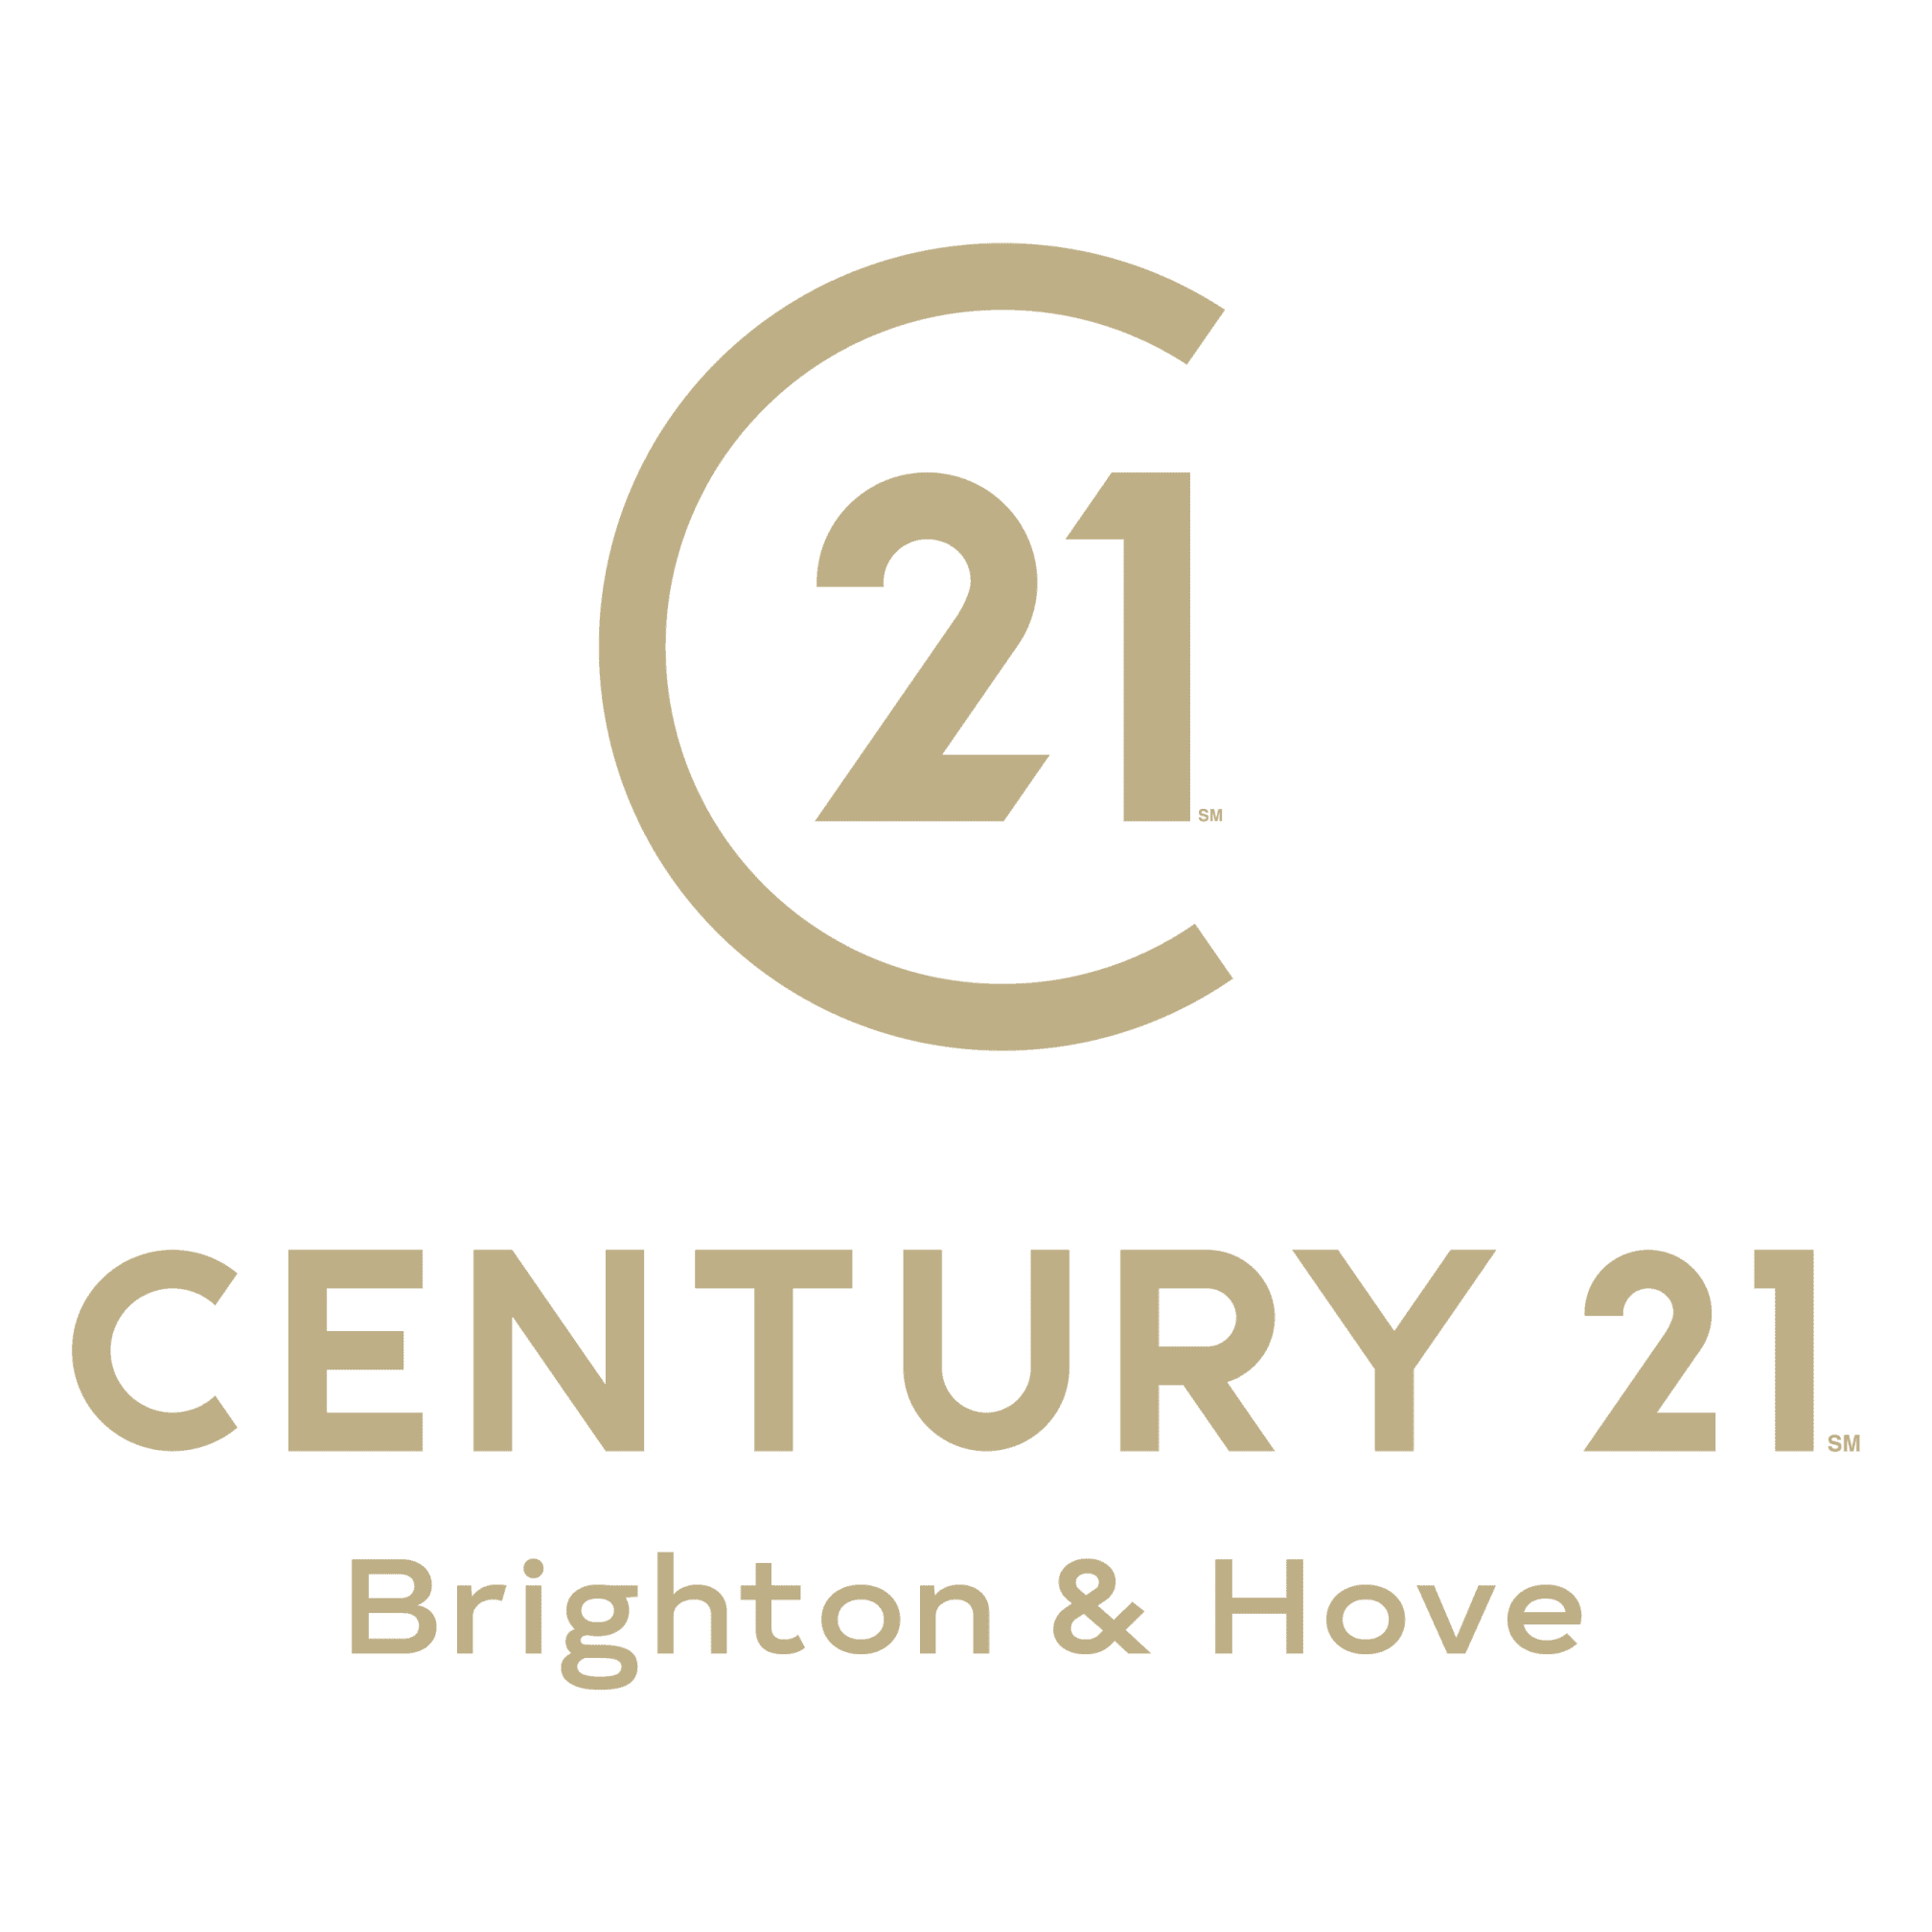 Агентство century. Сенчури 21 логотип. Century 21 агентство недвижимости. 21 Век логотип. Century 21 СПБ.